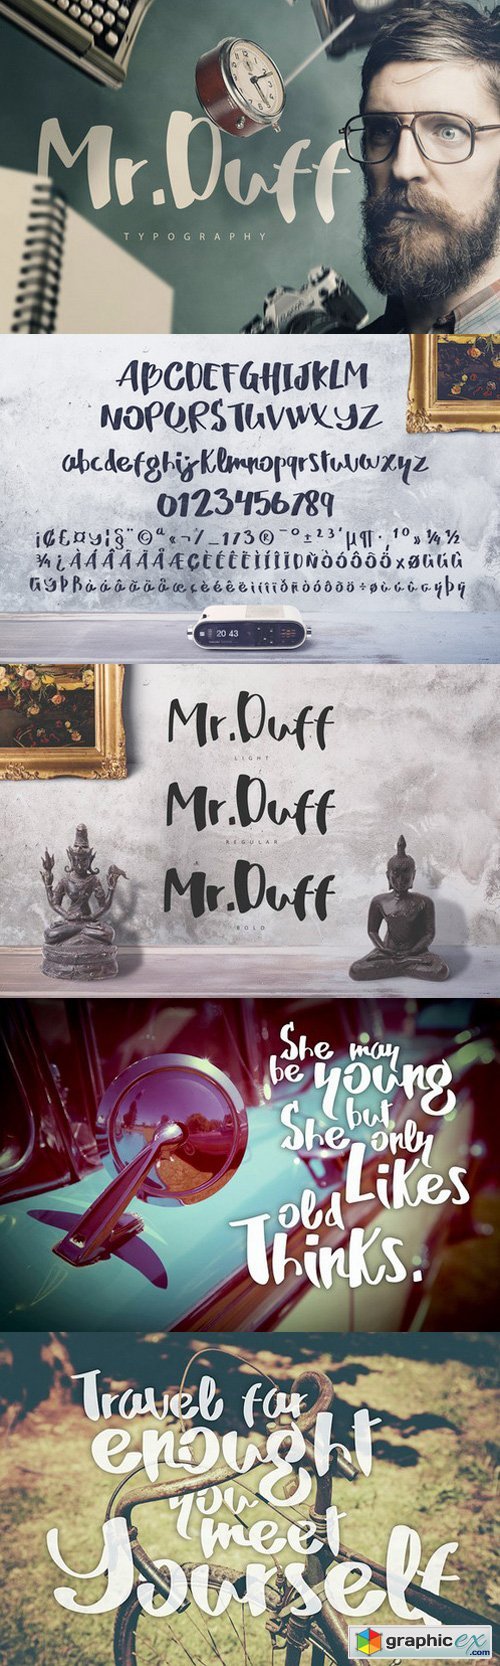 Mr. Duff Typeface